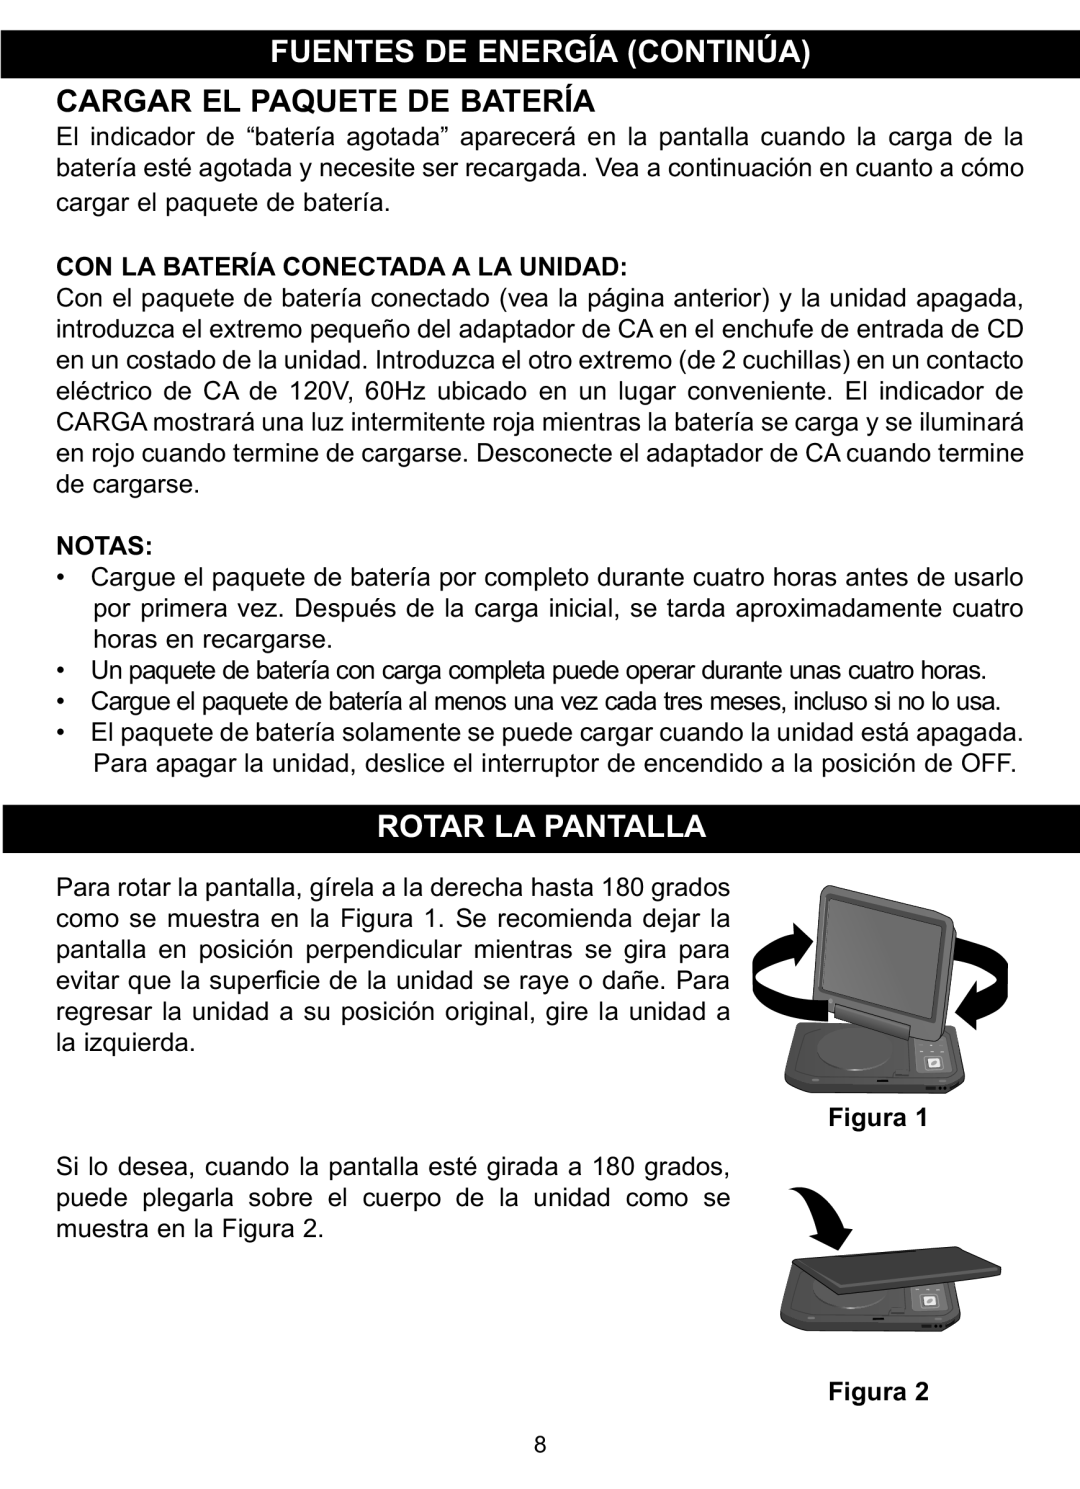 Memorex MVDP1088 manual Fuentes De Energía Continúa Cargar El Paquete De Batería, Rotar La Pantalla, Notas, Figura Figura 